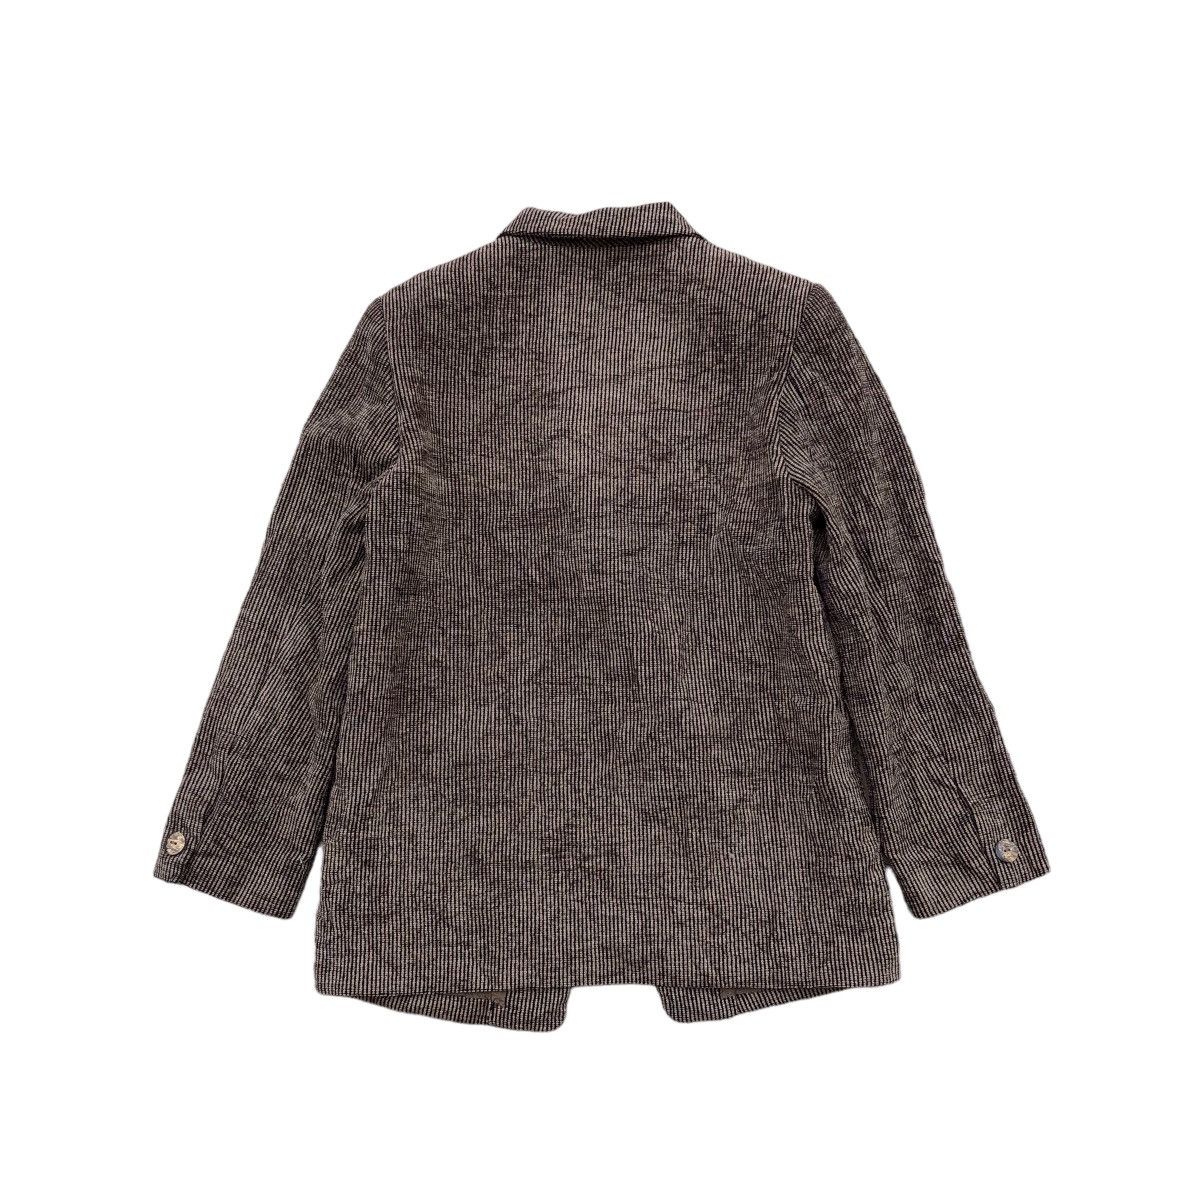 Archival Clothing PAUL LEMAIRE Corduroy Blazer Coat Size M / US 6-8 / IT 42-44 - 2 Preview